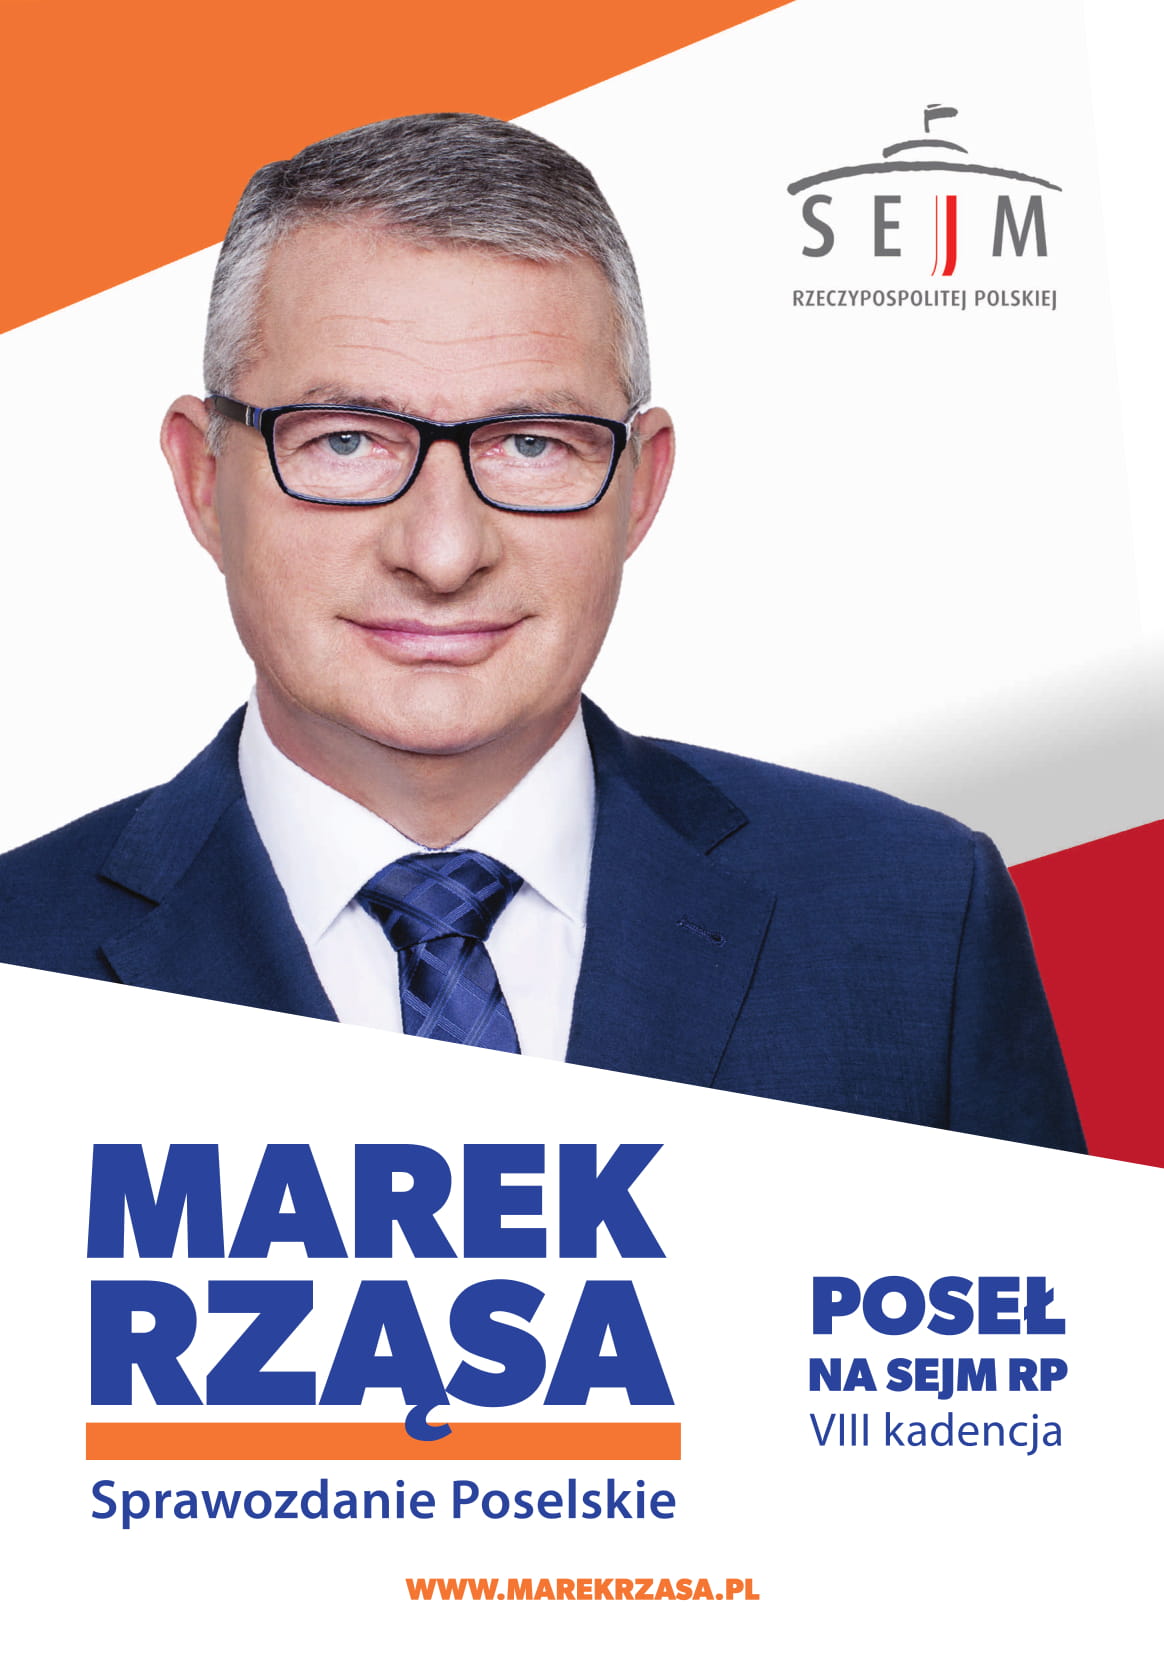 Marek Rząsa – Sprawozdanie Poselskie